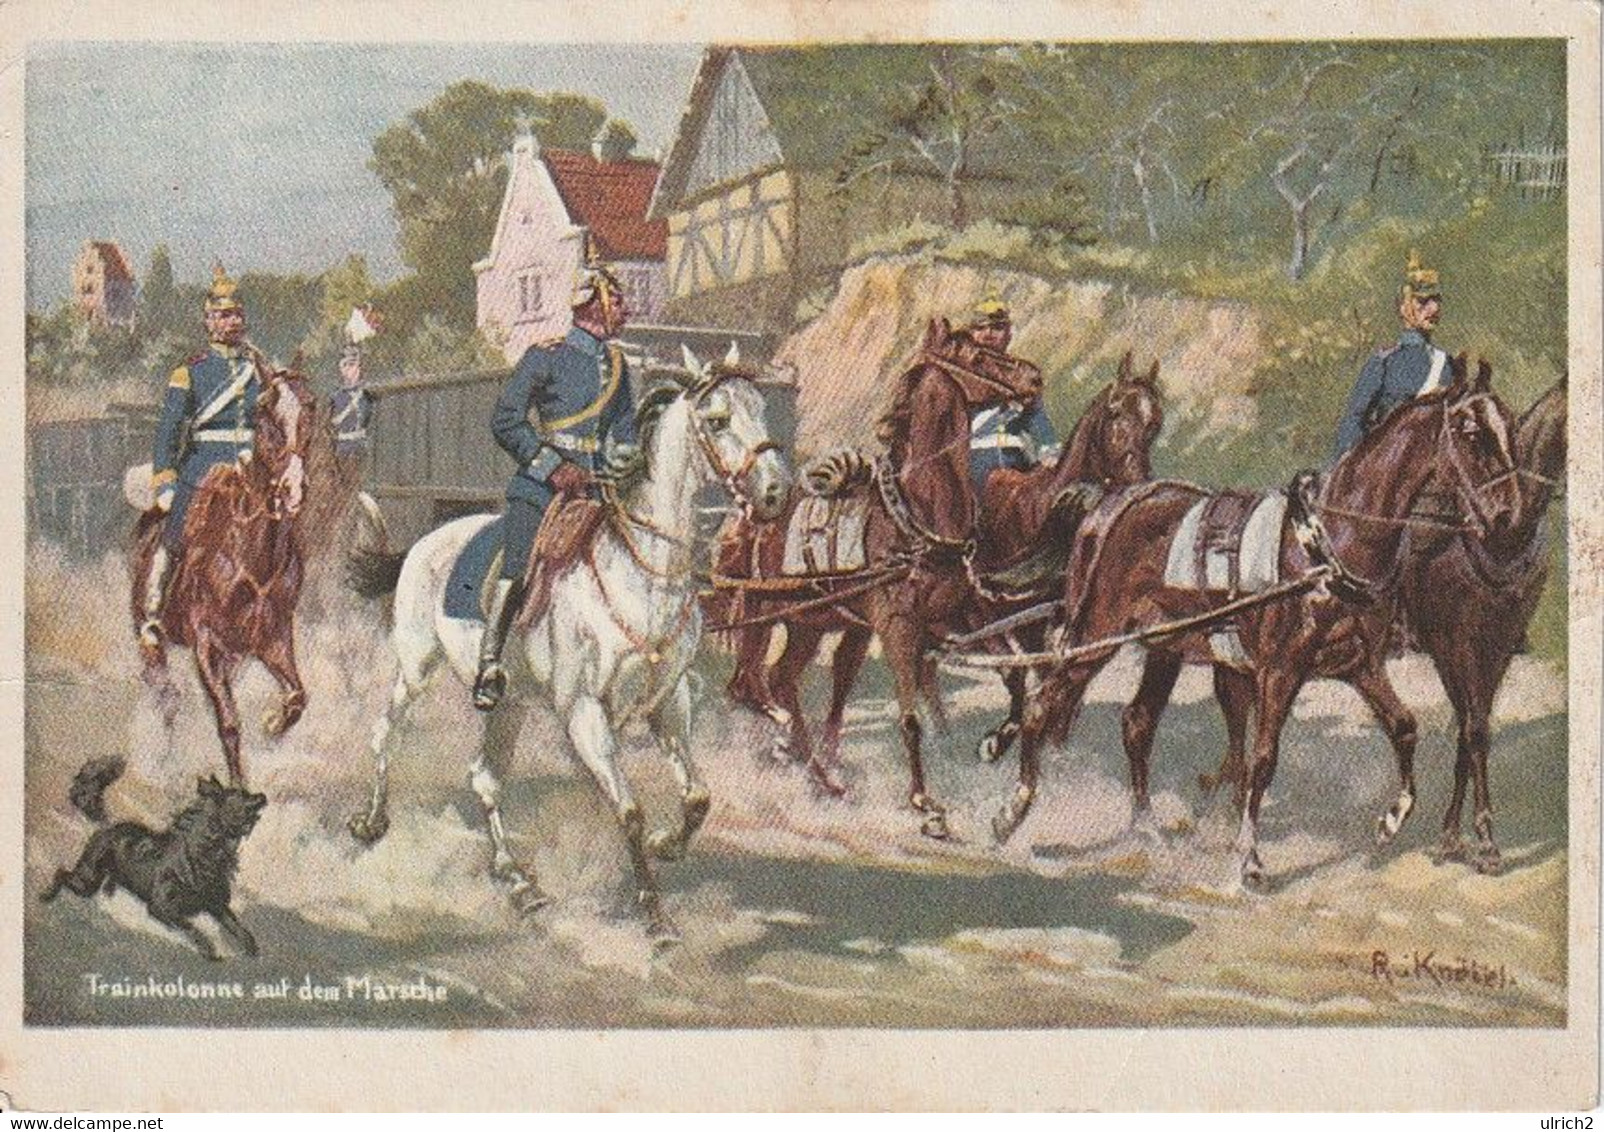 AK Trainkolonne Auf Dem Marsche - Dt. Reich - Künstlerkarte R. Knötel - Preuß. Landeskriegerverband - Ca. 1910 (60519) - Uniforms